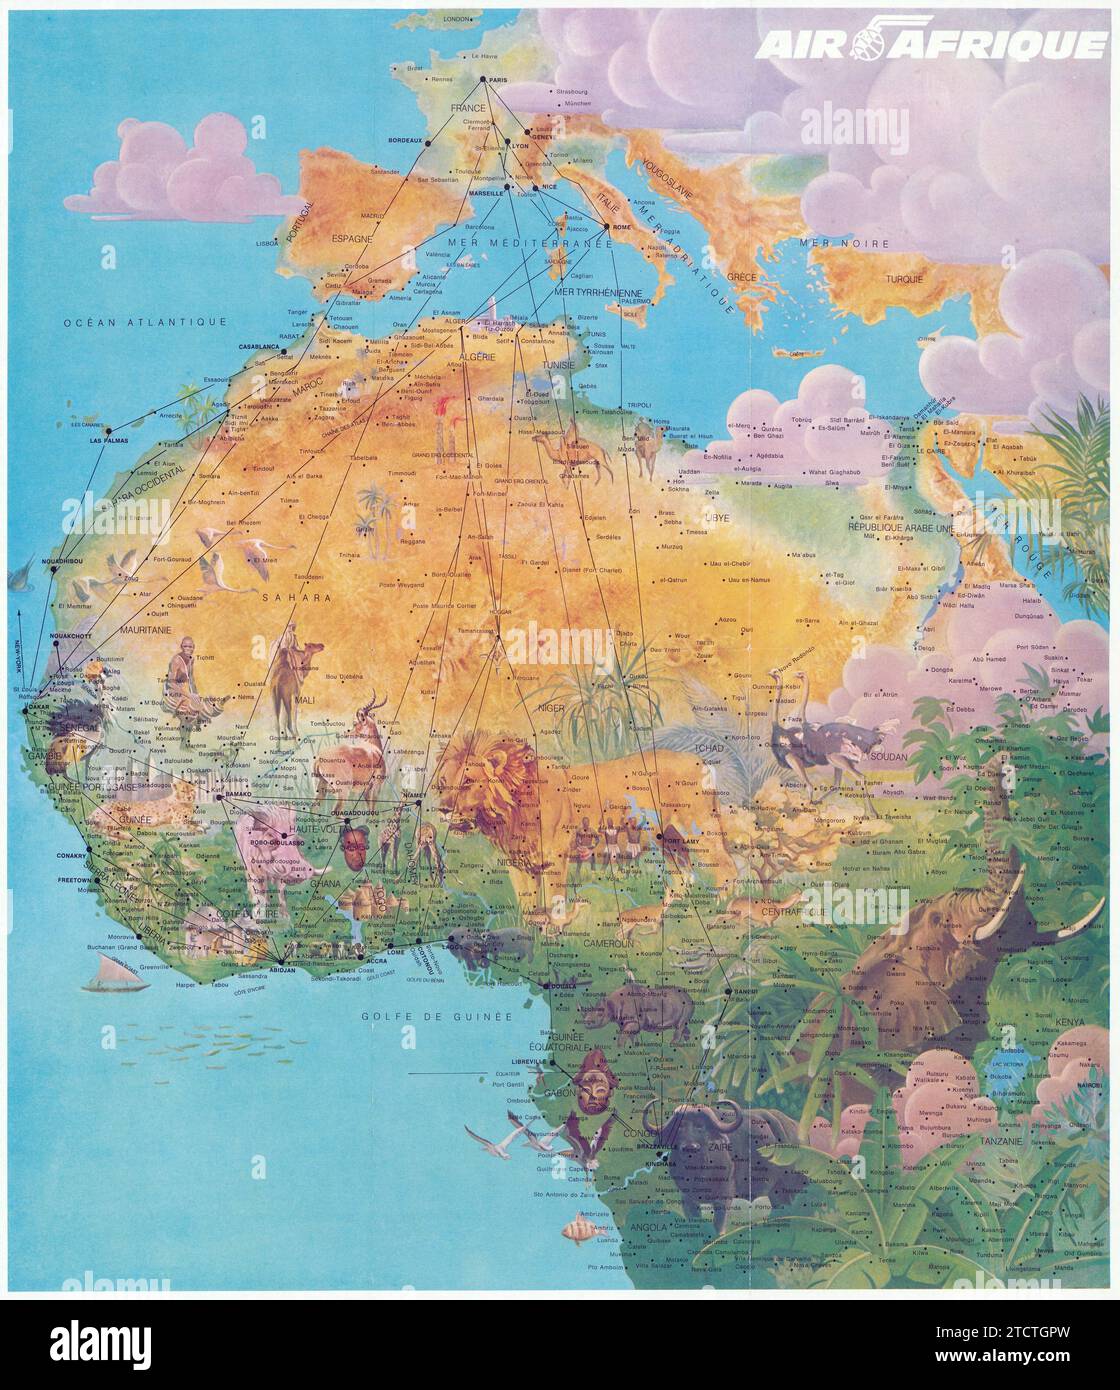 Poster Air Afrique - poster di viaggio proat illustrazione del continente africano con illustrazioni di animali - 1973 Foto Stock